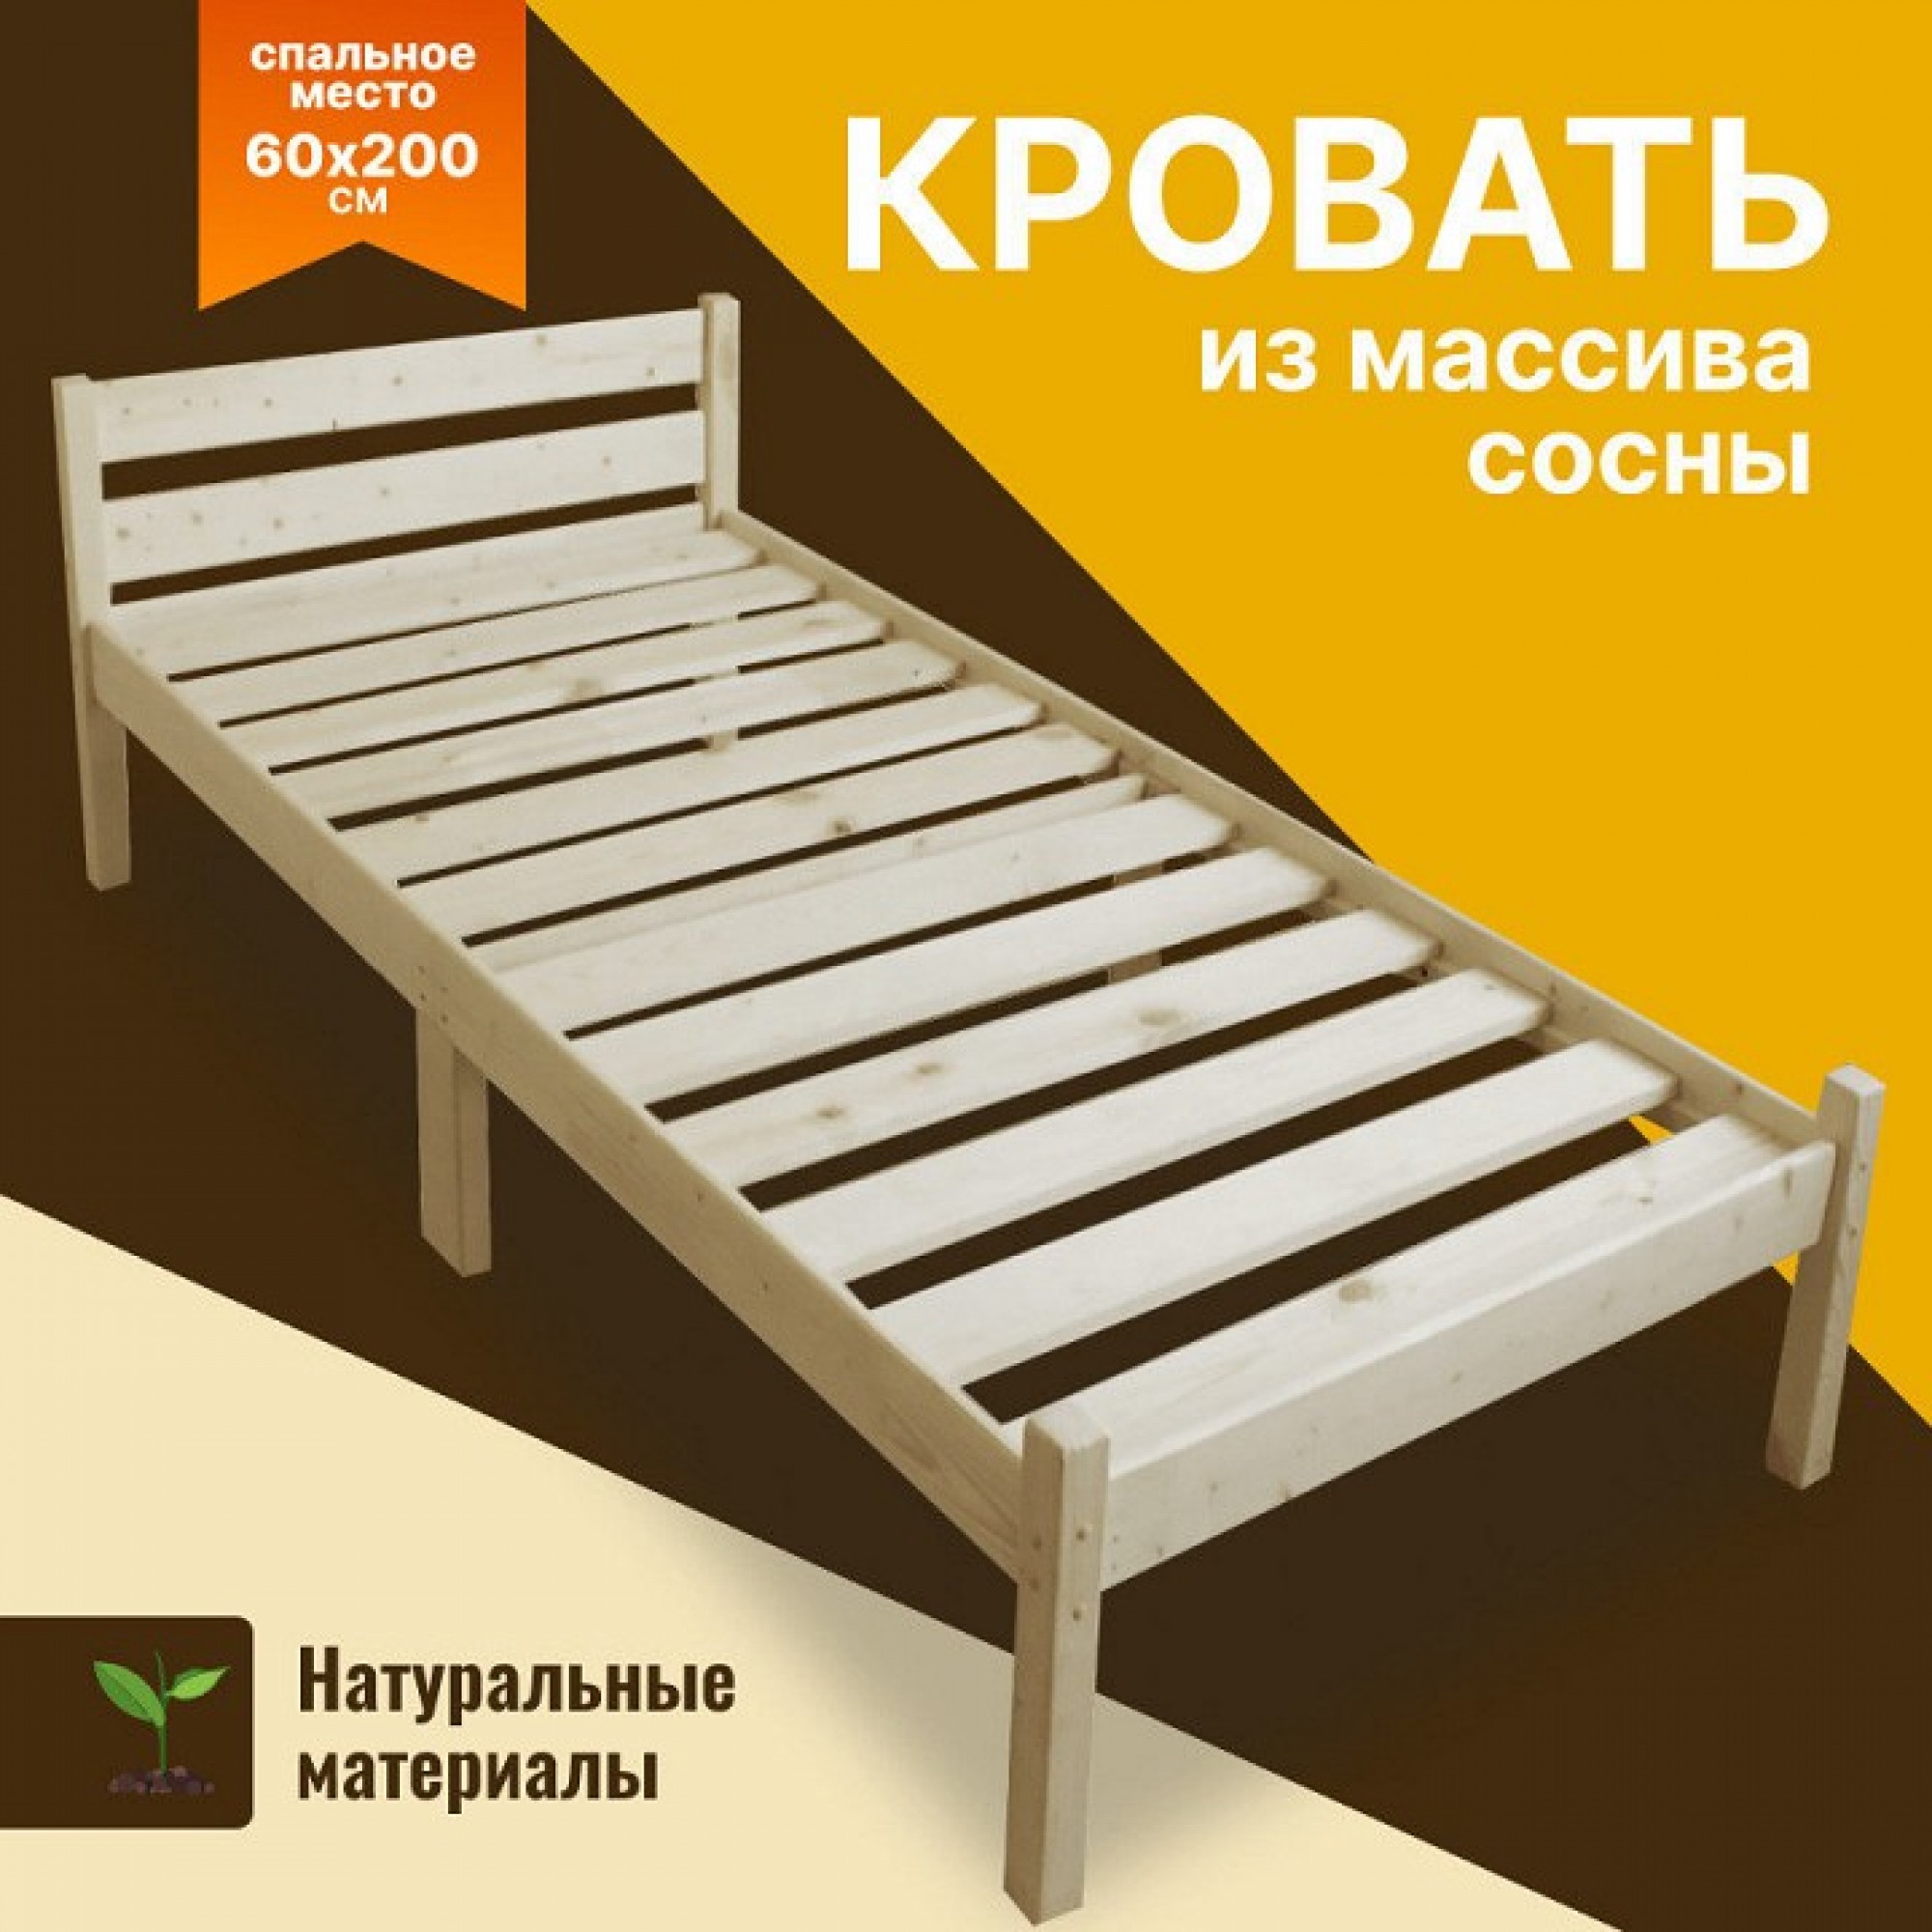 Кровать односпальная Компакт 2000x600 натуральный    SLR_kompakt60